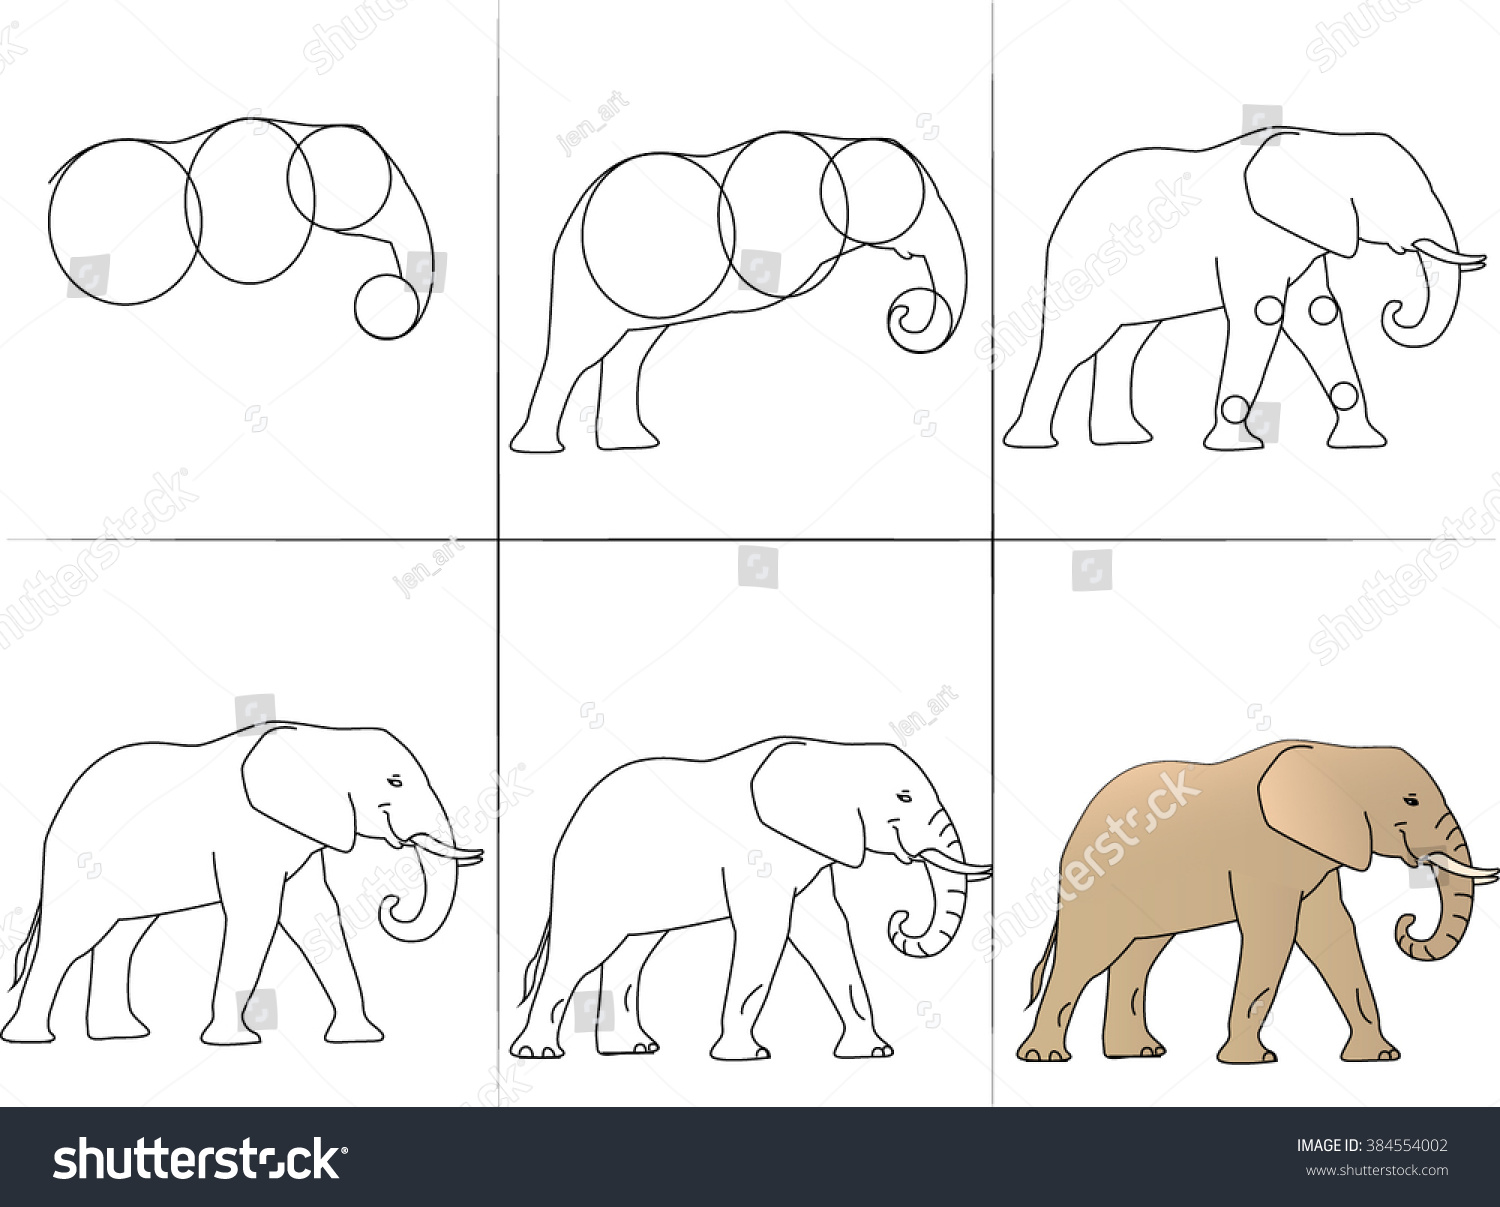 Как нарисовать слона по тесту на ПСИХИКУ